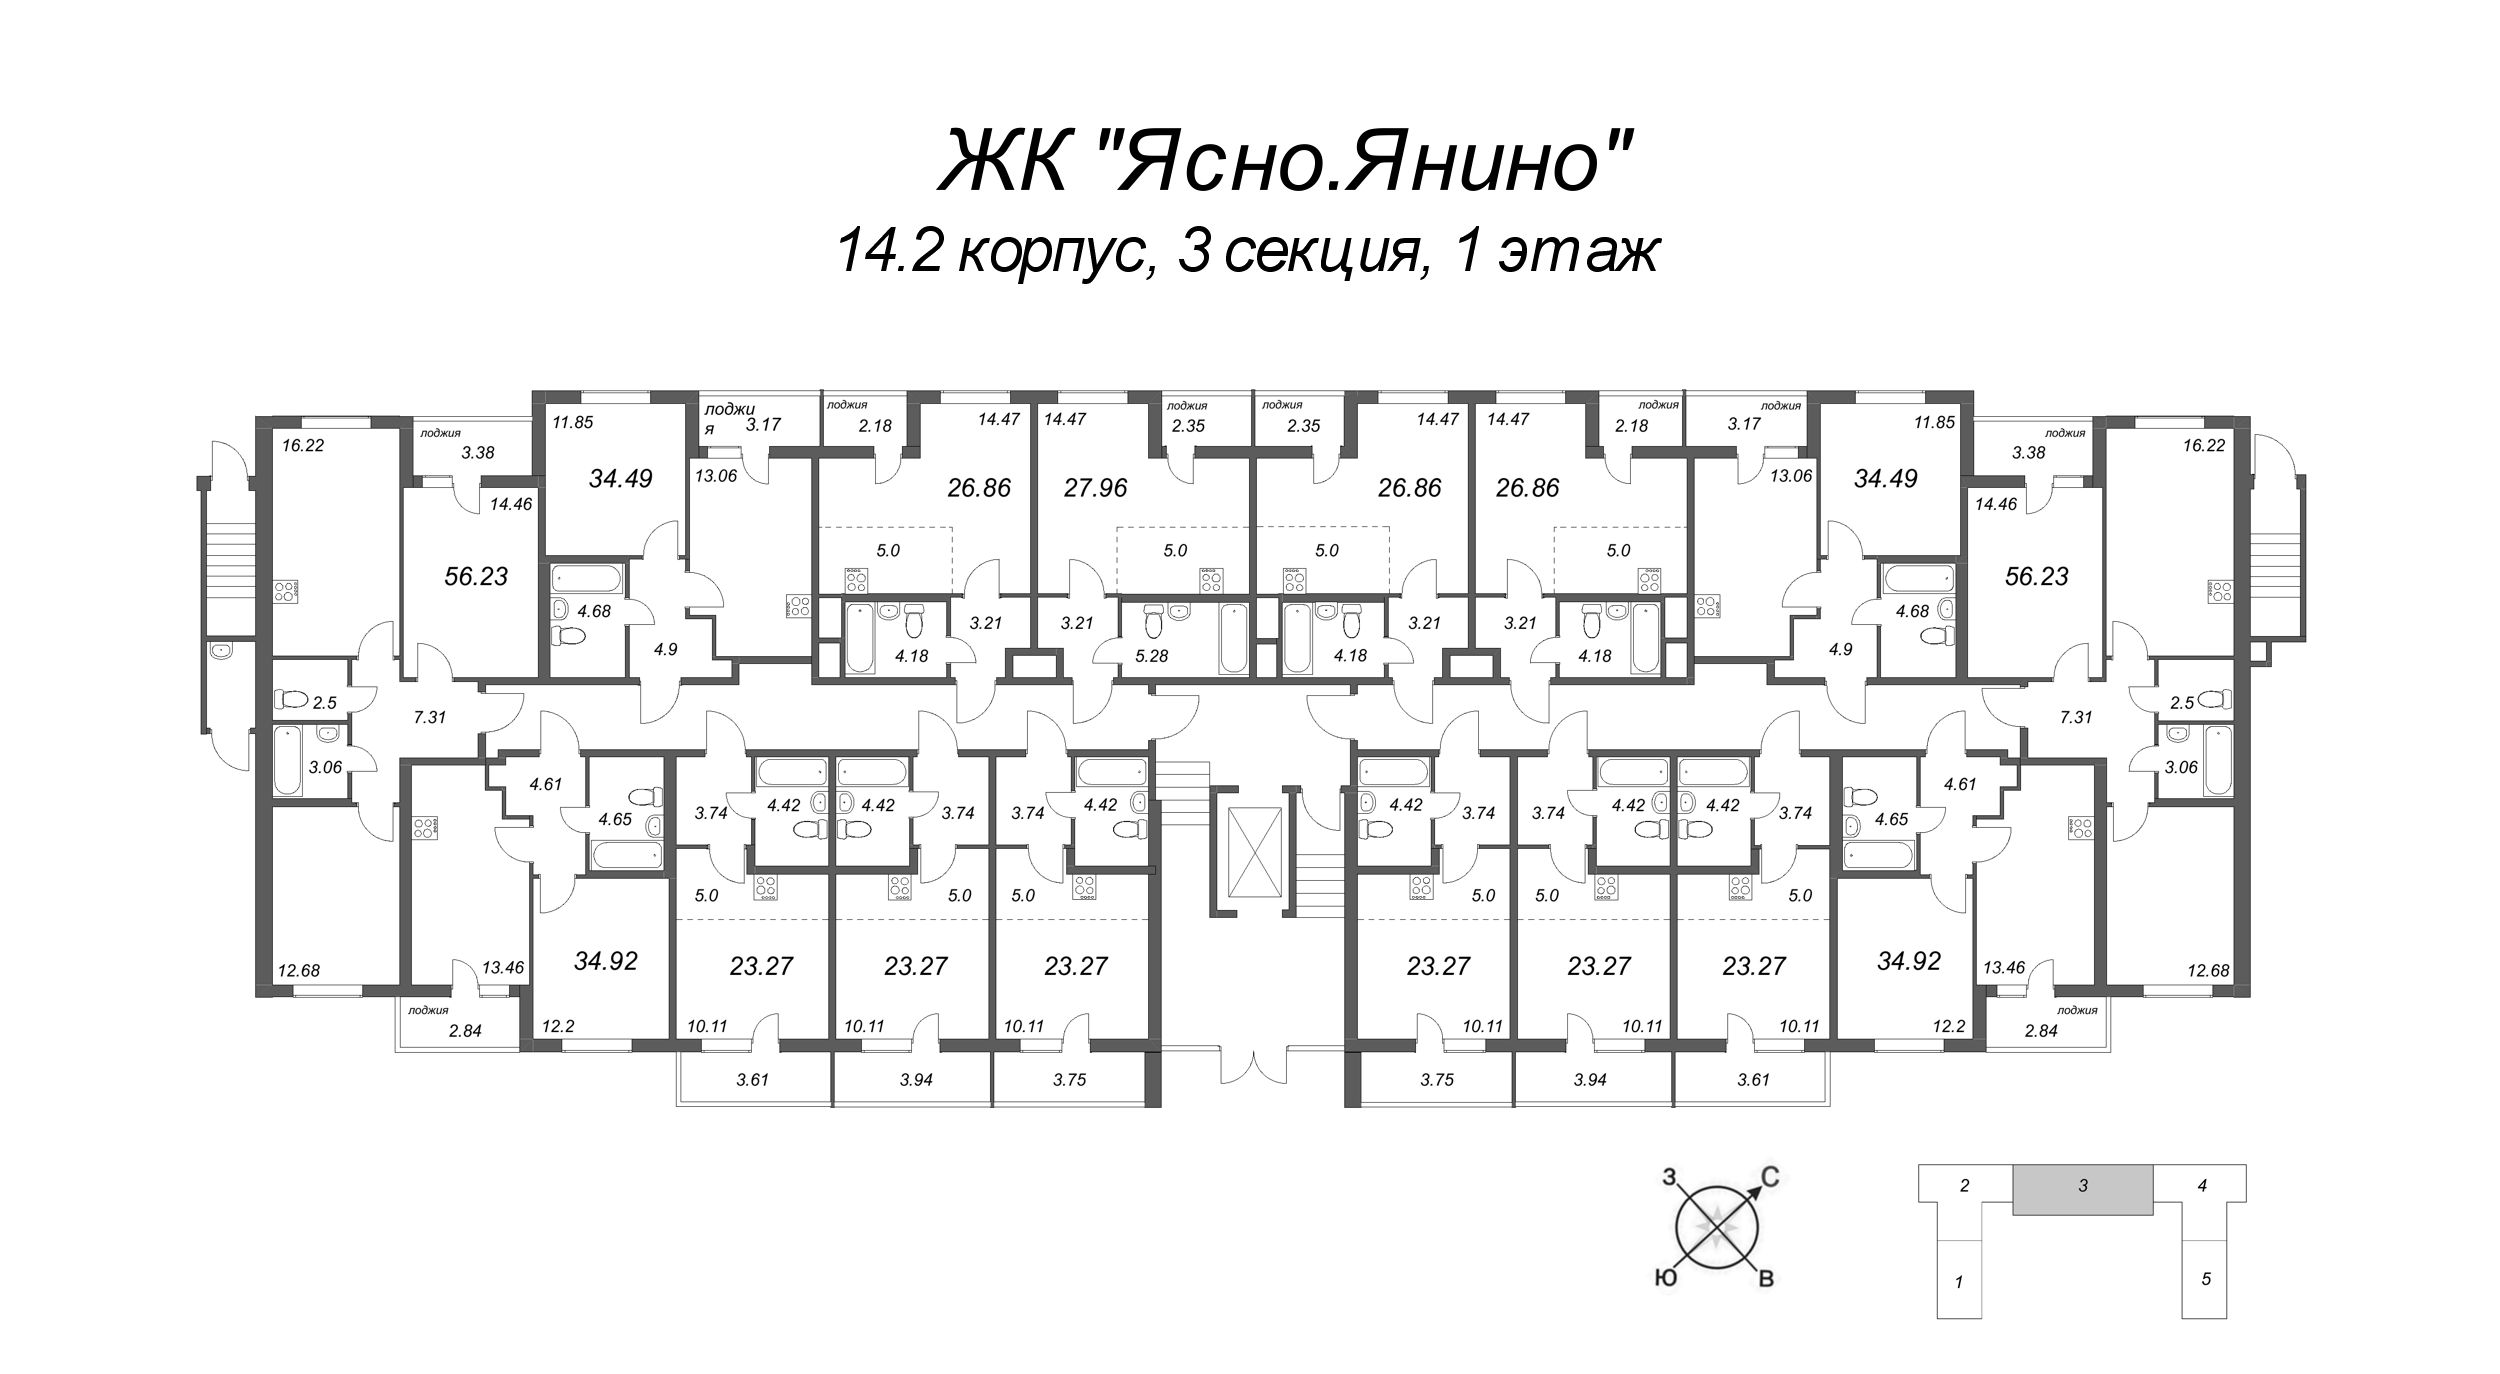 Квартира-студия, 26.86 м² в ЖК "Ясно.Янино" - планировка этажа